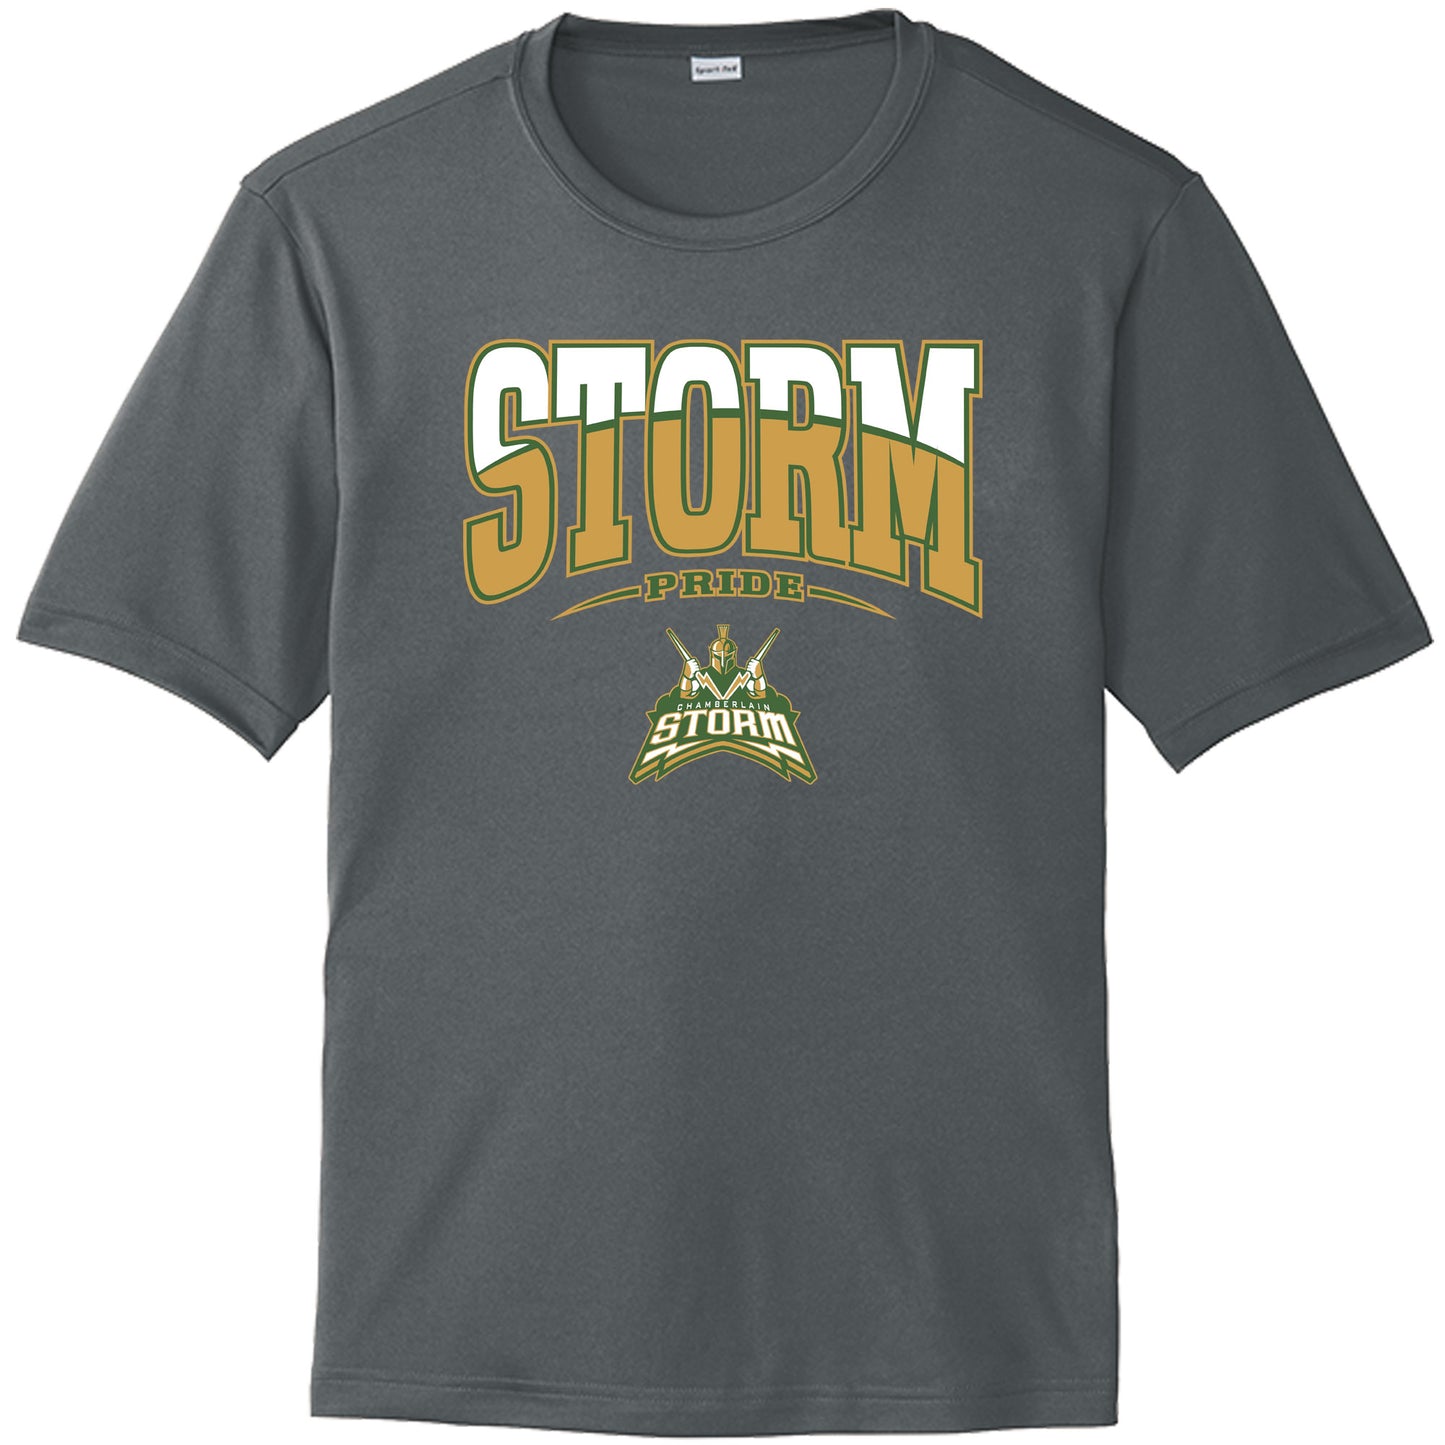 Chamberlain High School Drifit Shirt "Storm Logo"